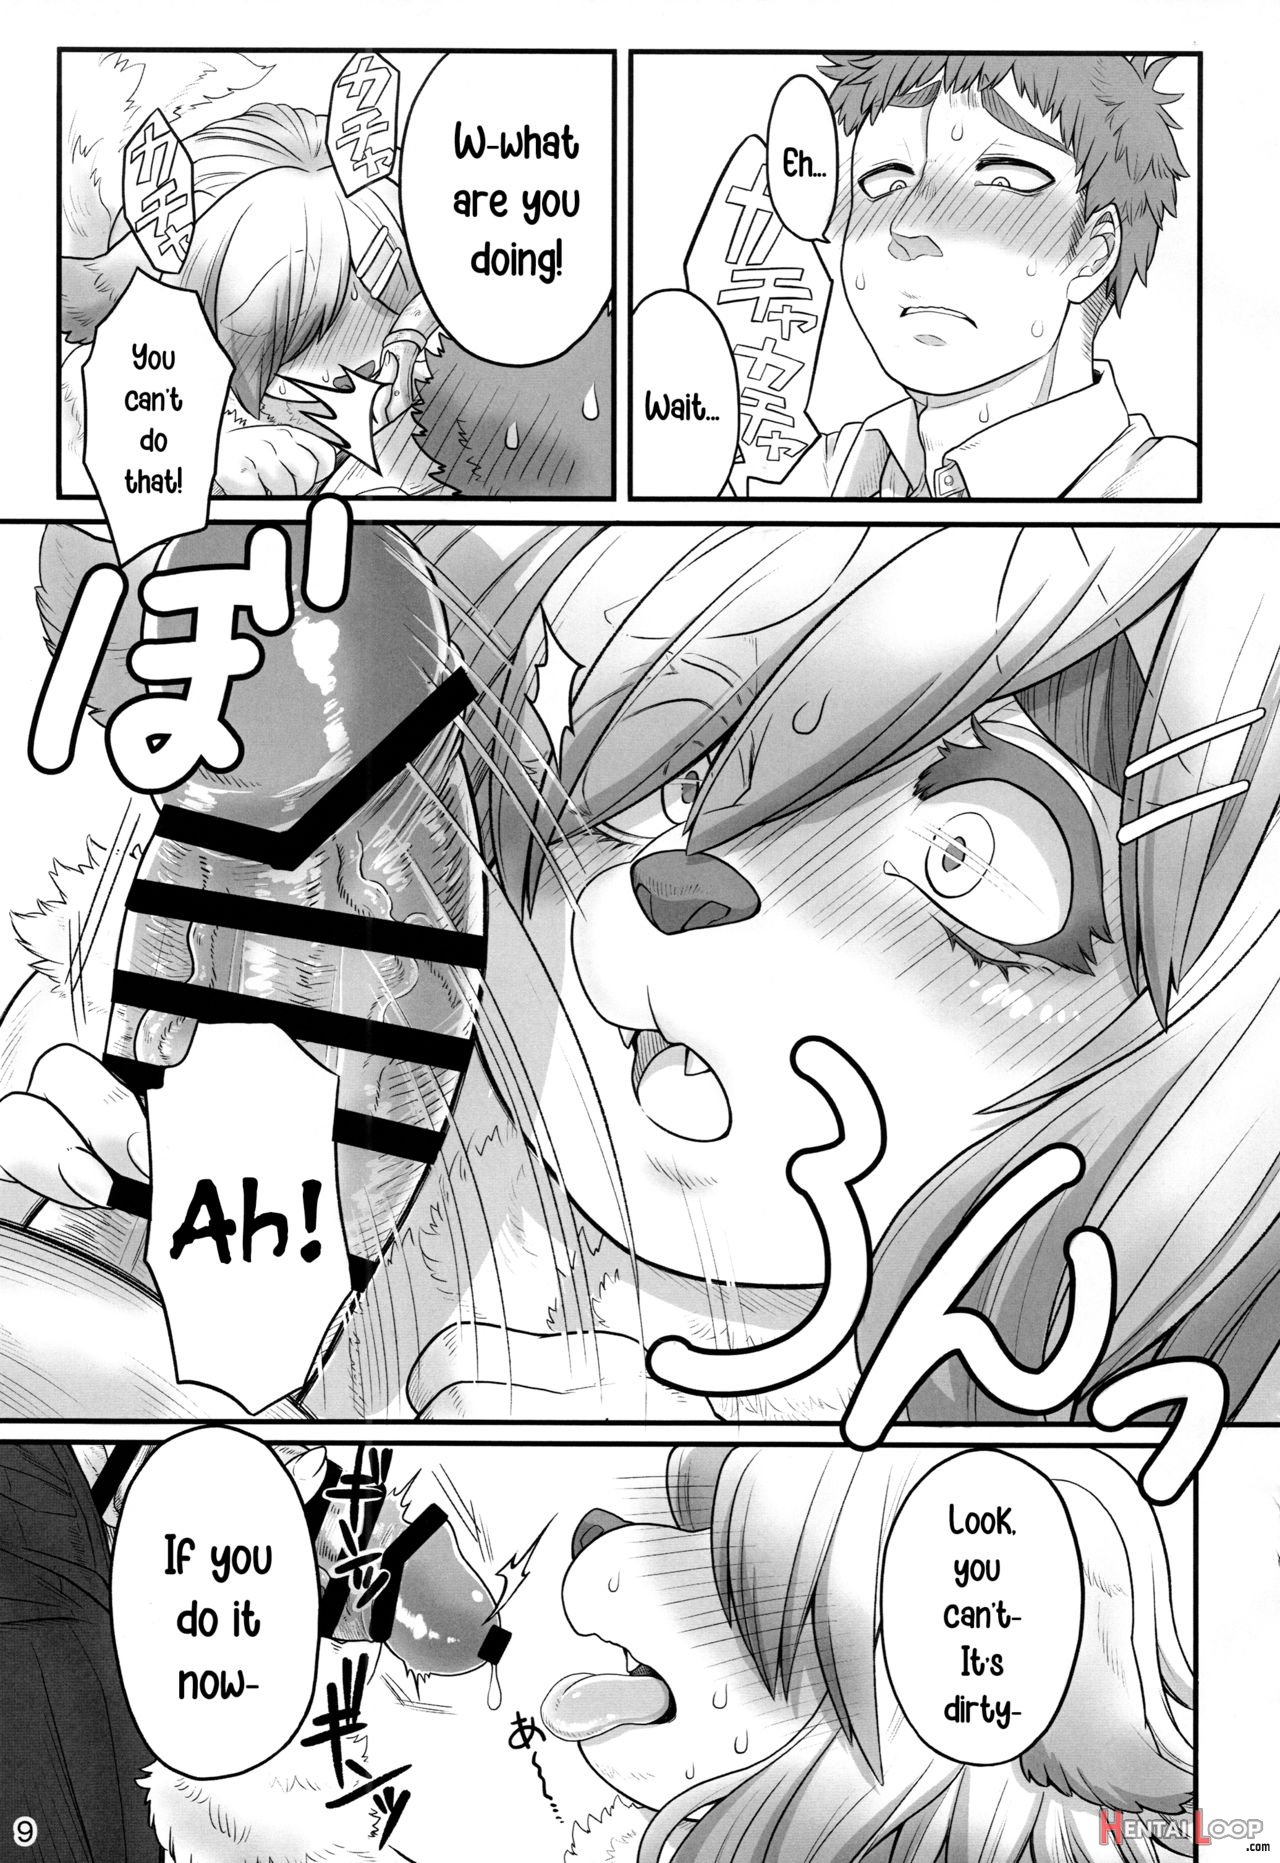 Megumi-san's Secret page 9